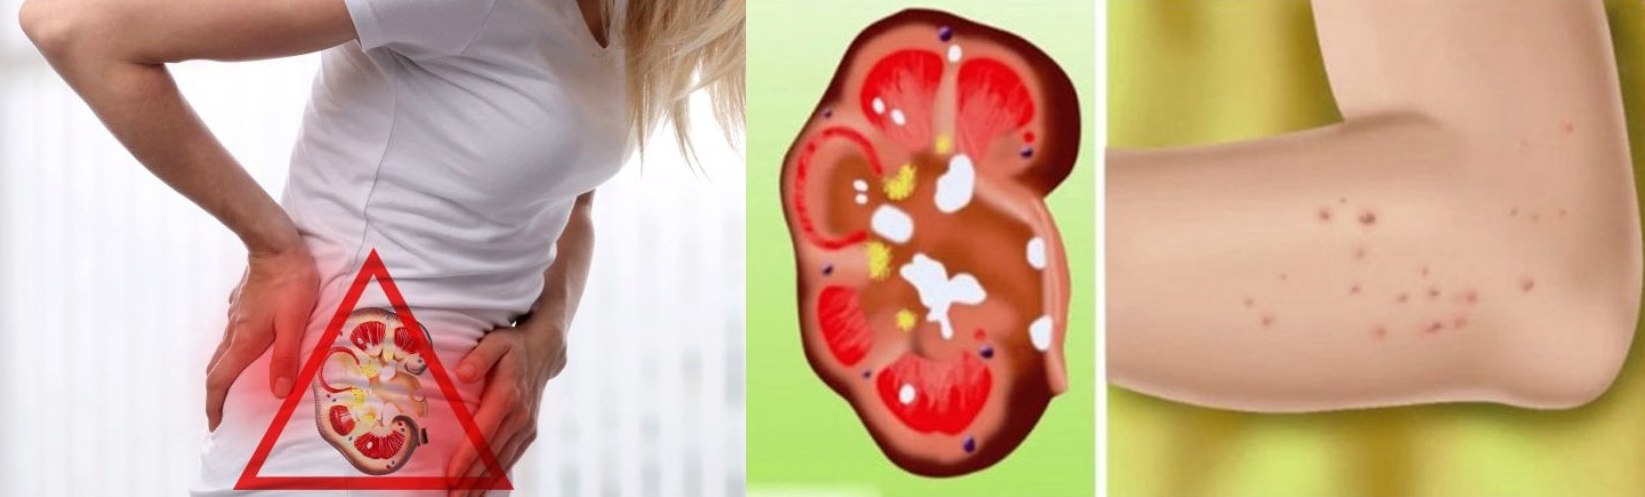 Dacă te dor rinichii, corpul prezintă aceste 8 semnale de alarmă